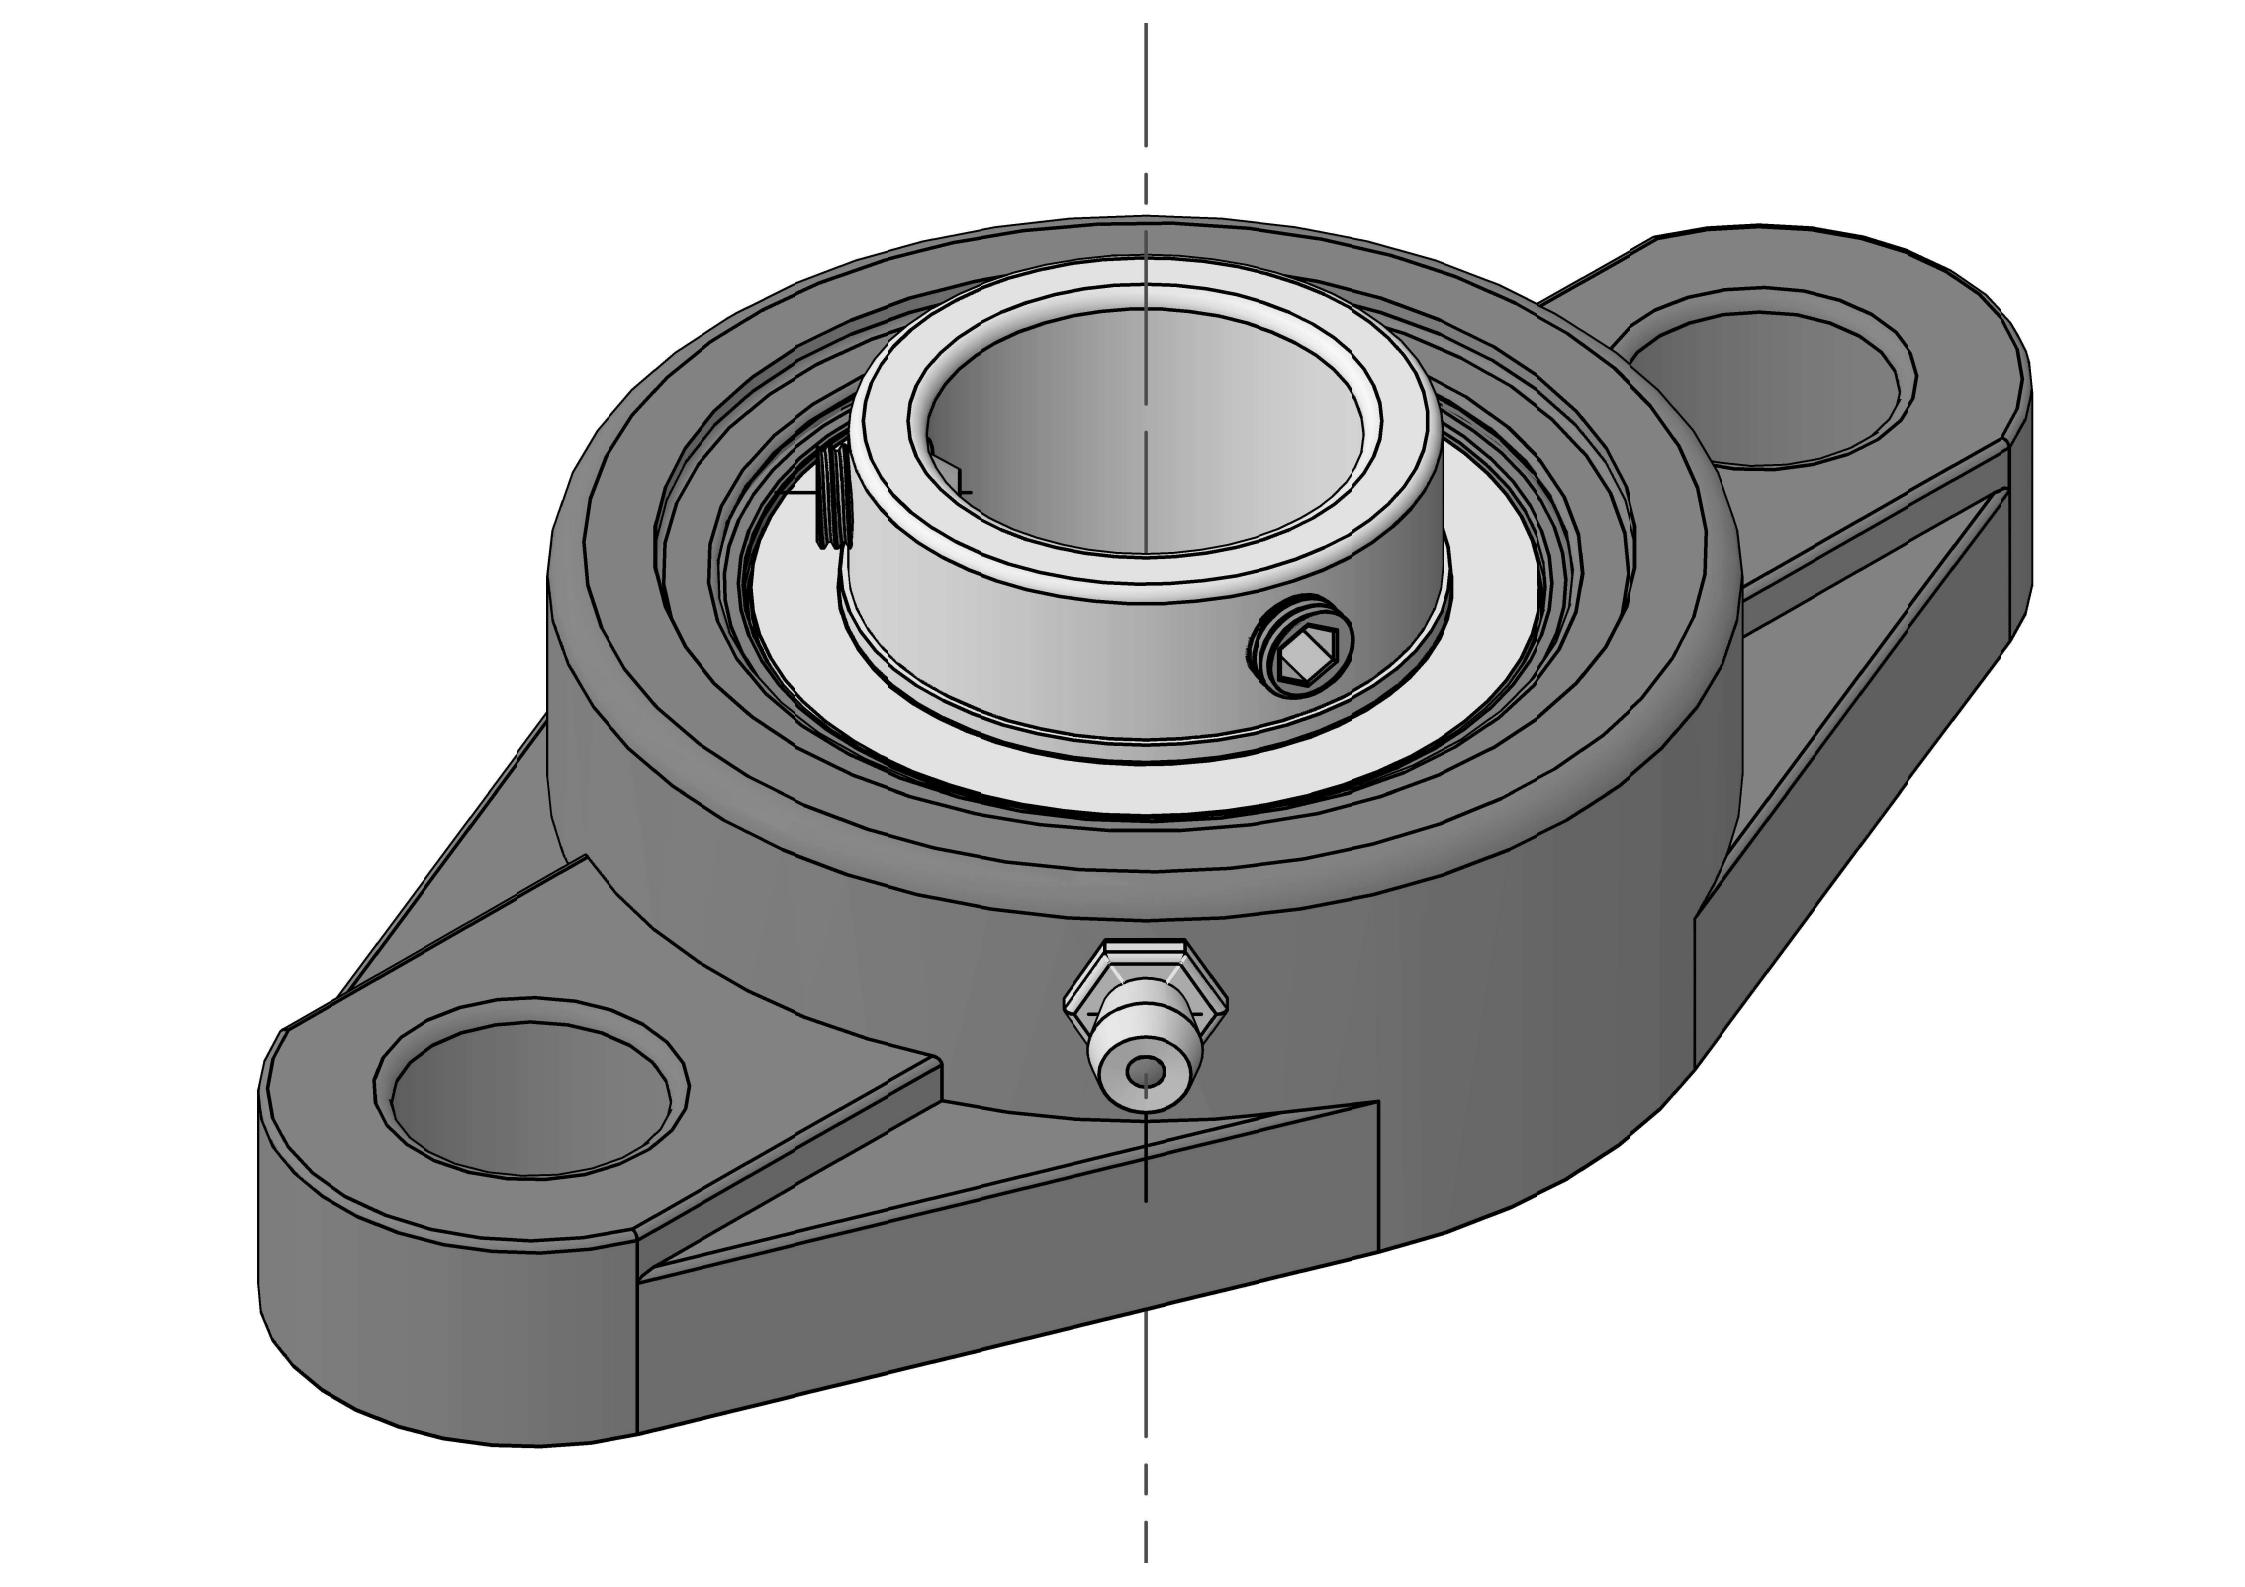 HCFLU210-31 Duha ka Bolt Oval Flange bearing Units nga adunay 1-15 / 16 pulgada nga bore